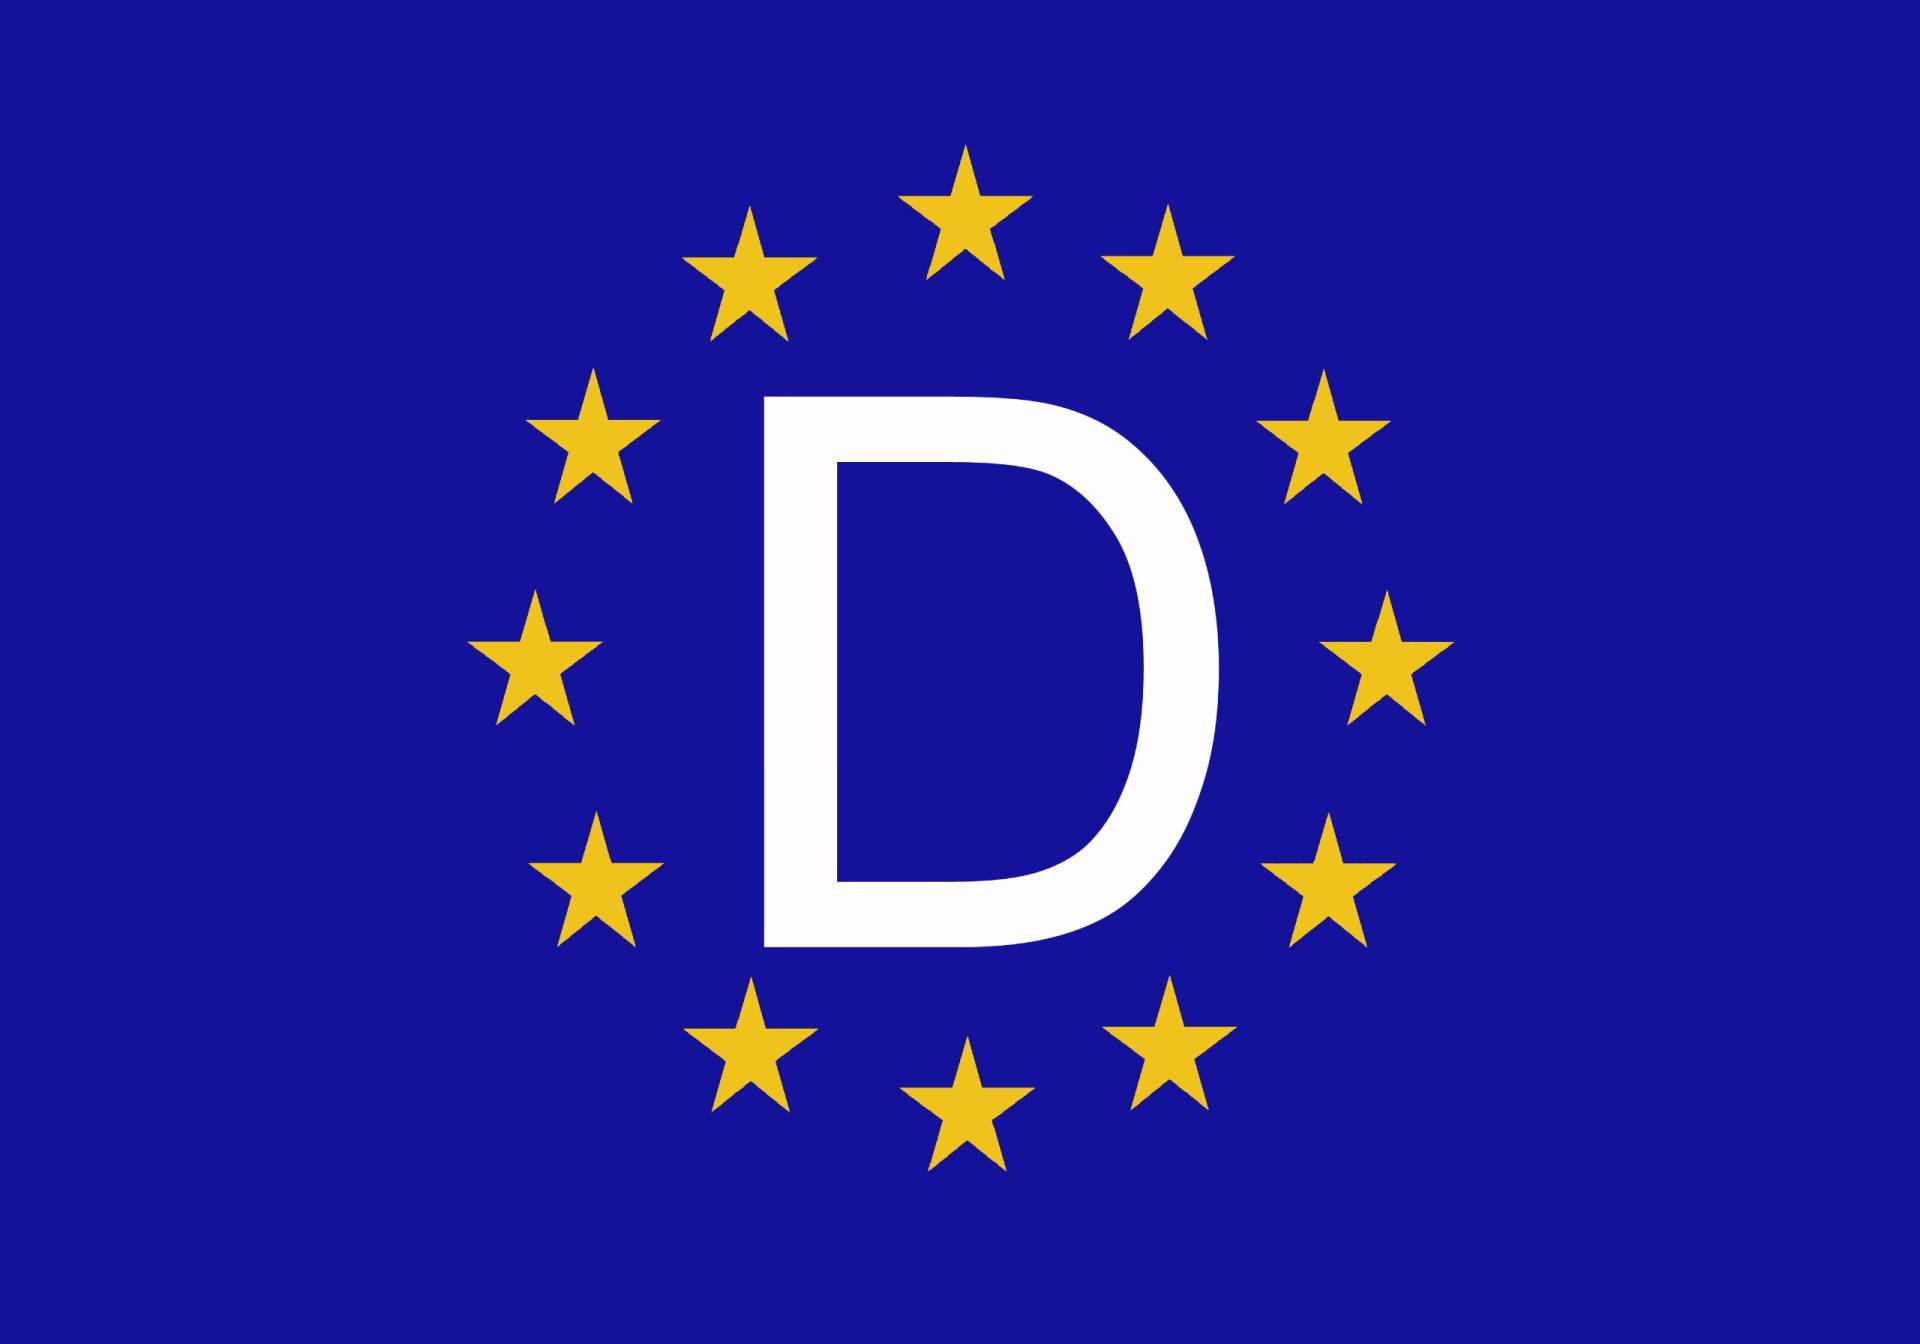 Etaia 7x10 cm Auto Aufkleber Fahne/Flagge von Europa 12 Sterne Kennzeichen D - Deutschland - EU Sticker Motorrad von Etaia